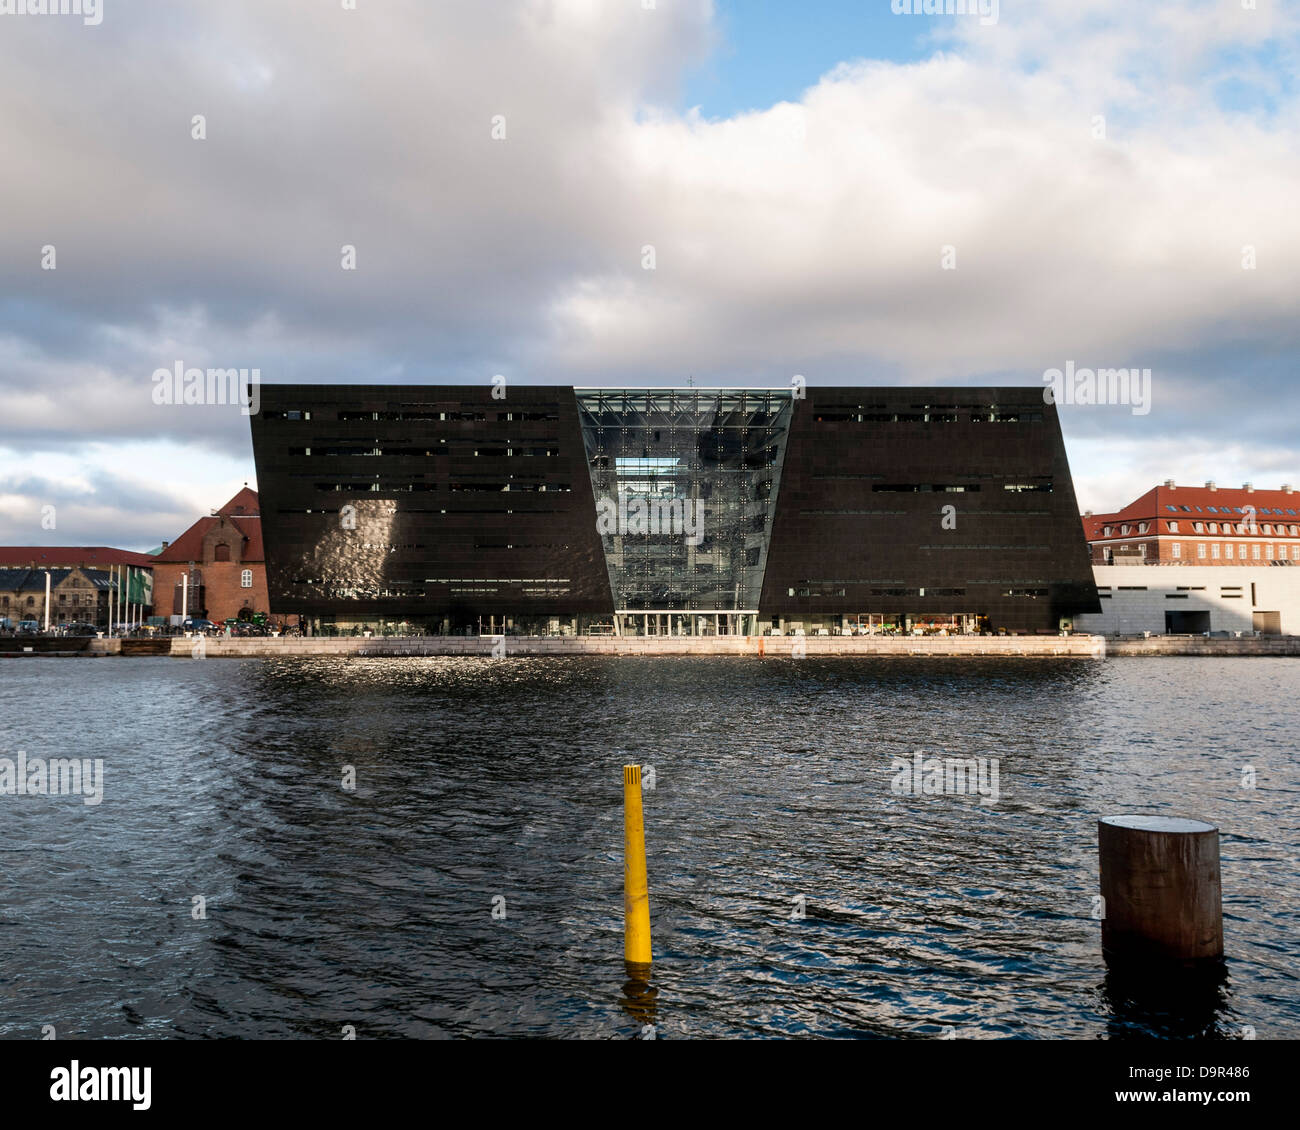 Der Black Diamond - der königlichen Bibliothek, Kopenhagen, Dänemark. Architekt: Schmidt Hammer & Lassen Ltd, 1999. Außenansicht einer Stockfoto